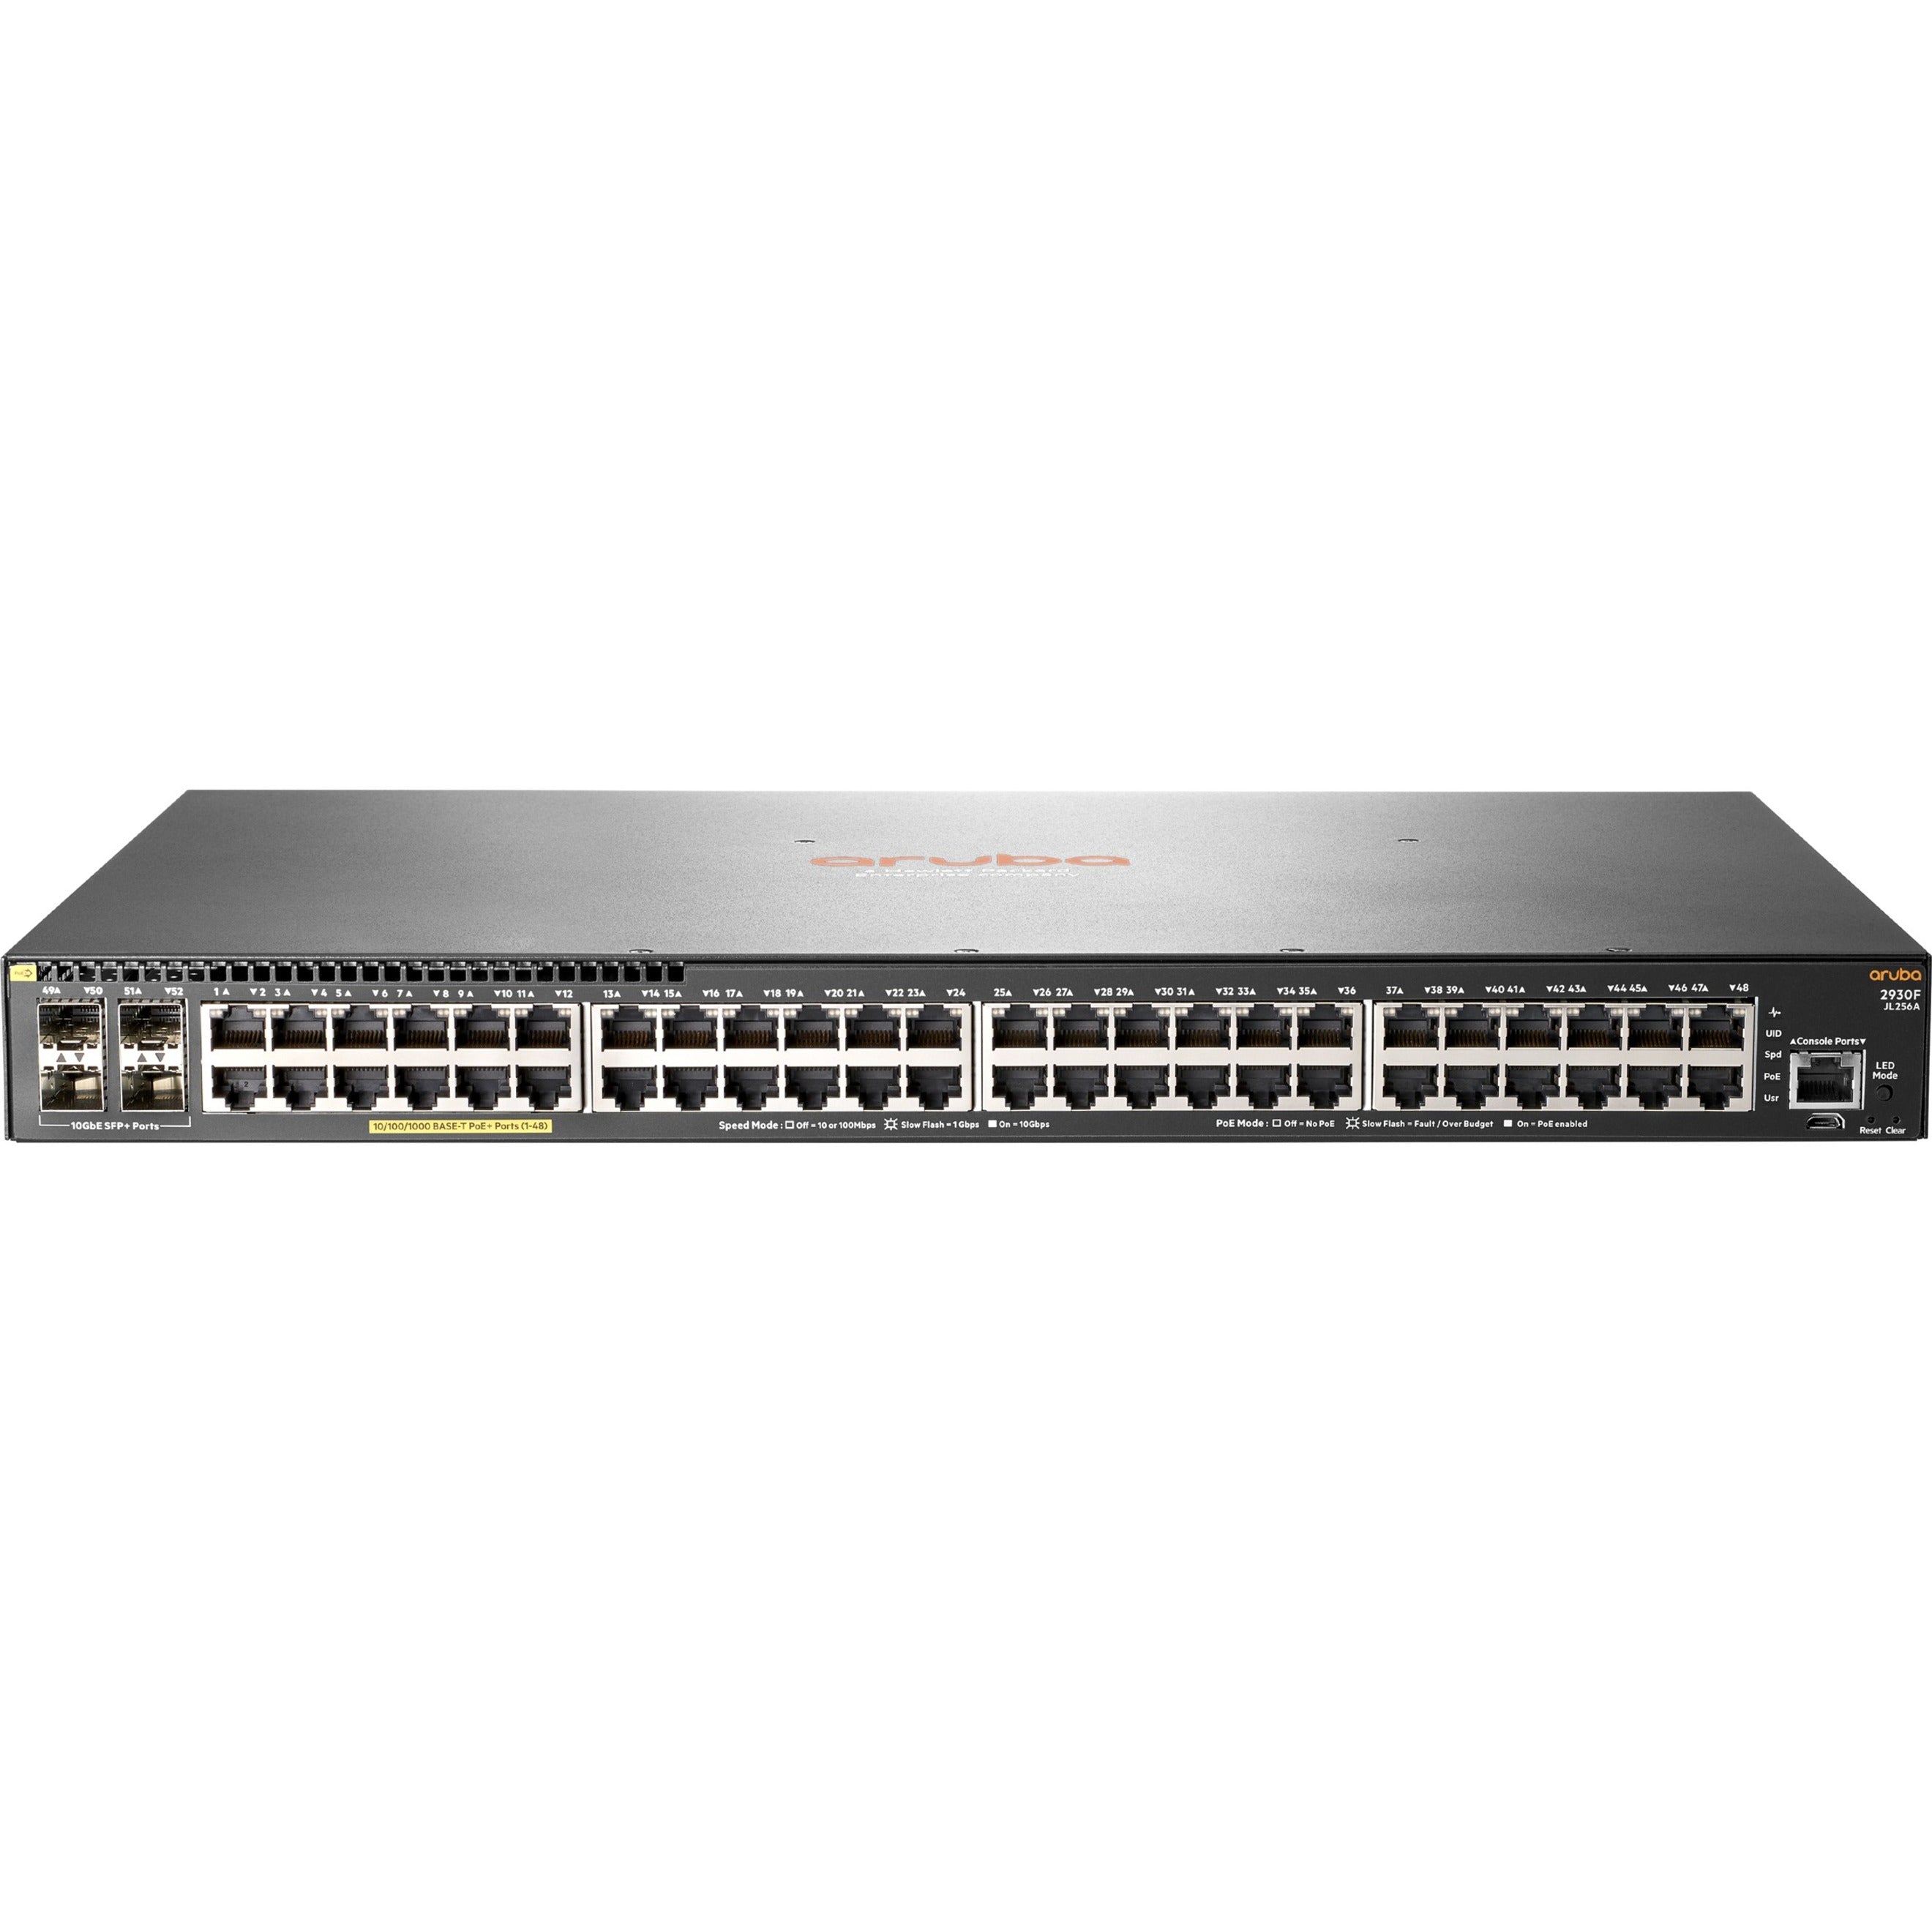 Aruba 2930F 48G PoE+ 4SFP+ 740W Switch, Layer 3 Switch, 48 Gigabit Ethernet Ports